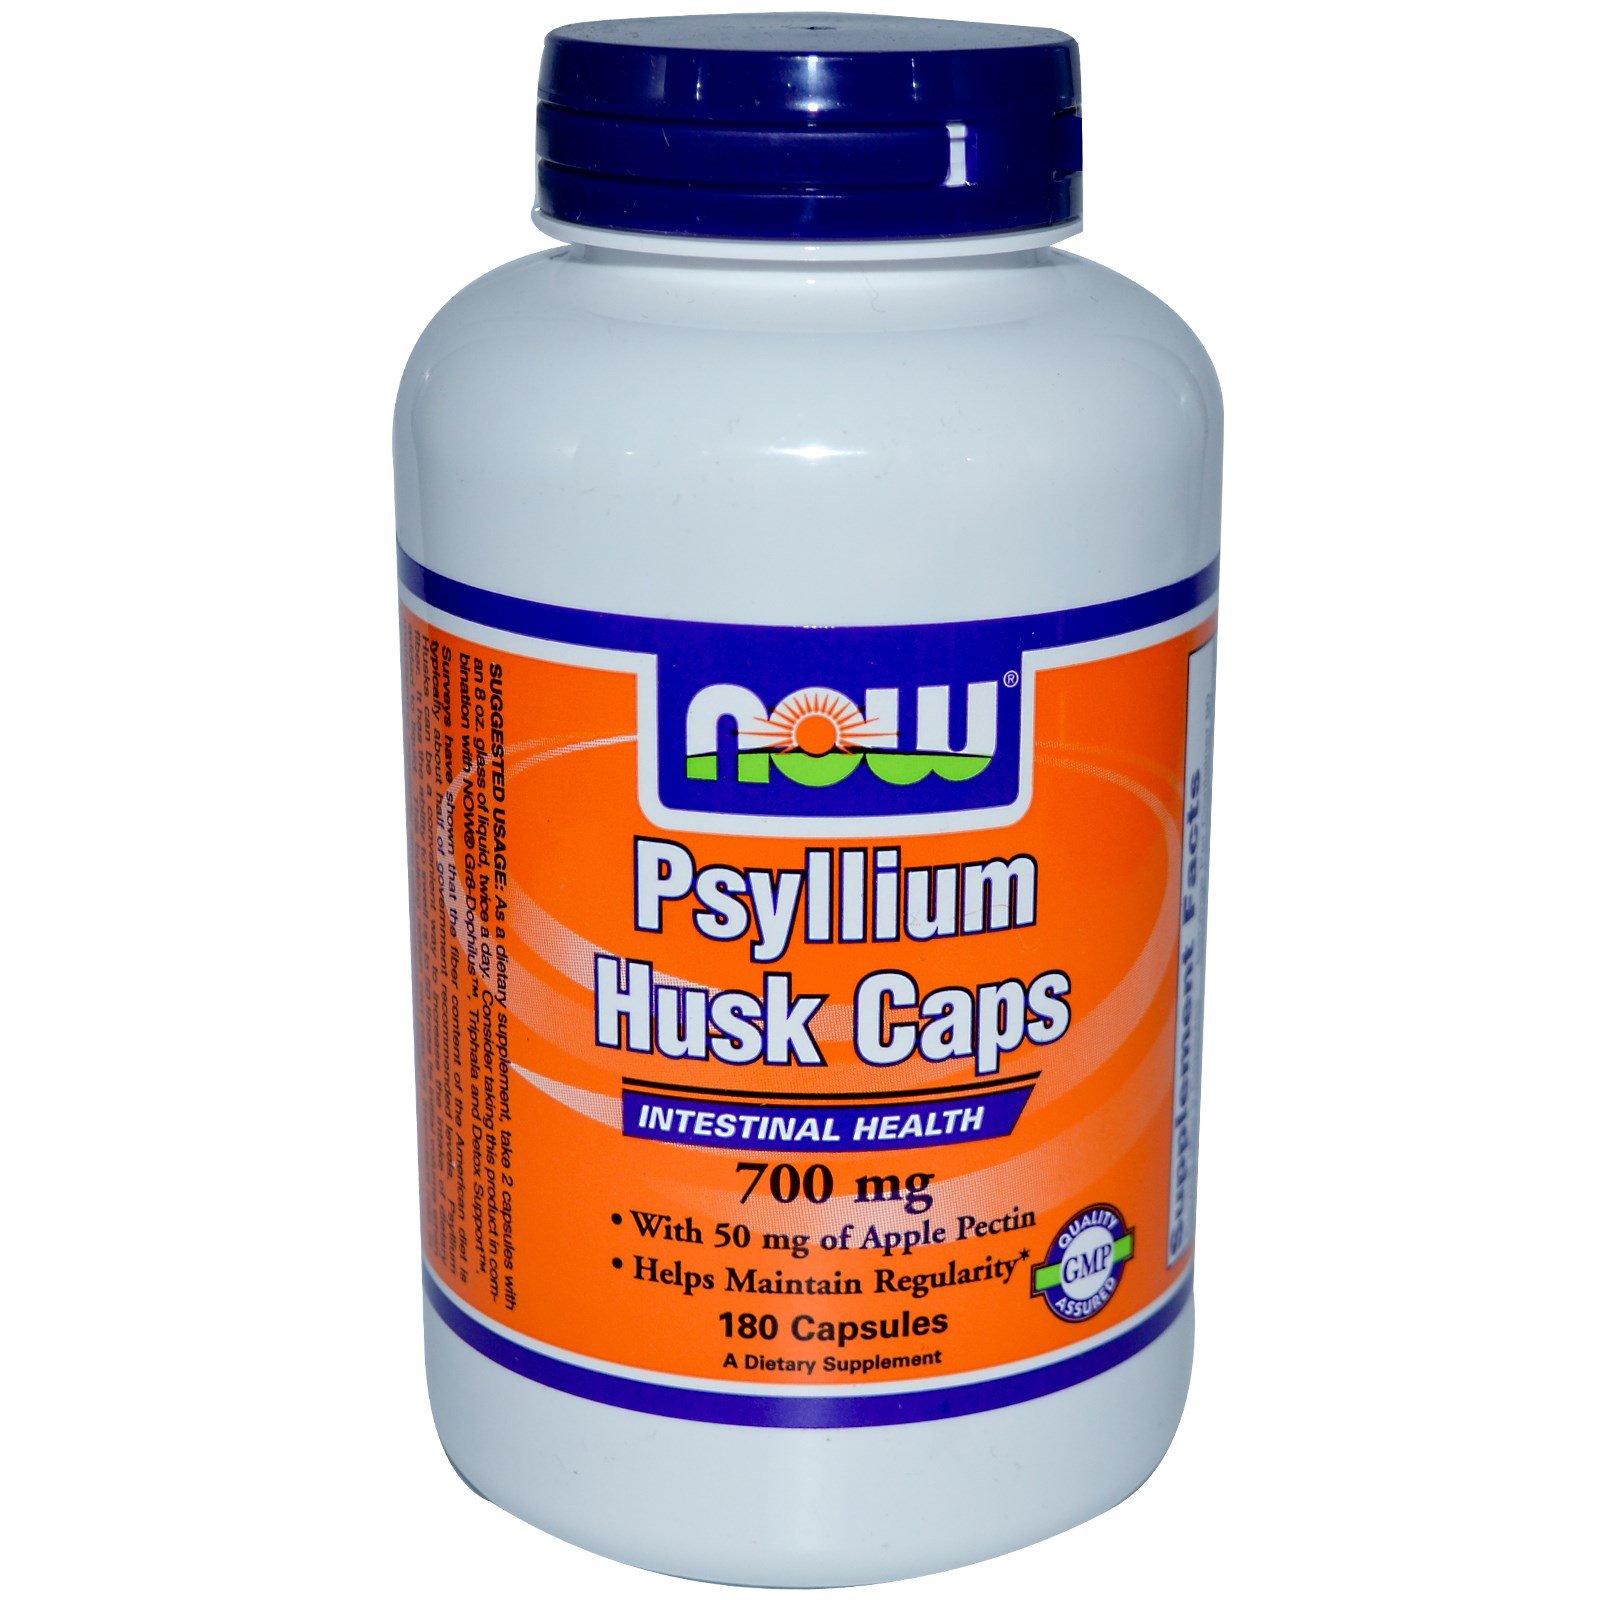 Psyllium Husk Caps, 180 шт, Now. Спец препараты. 